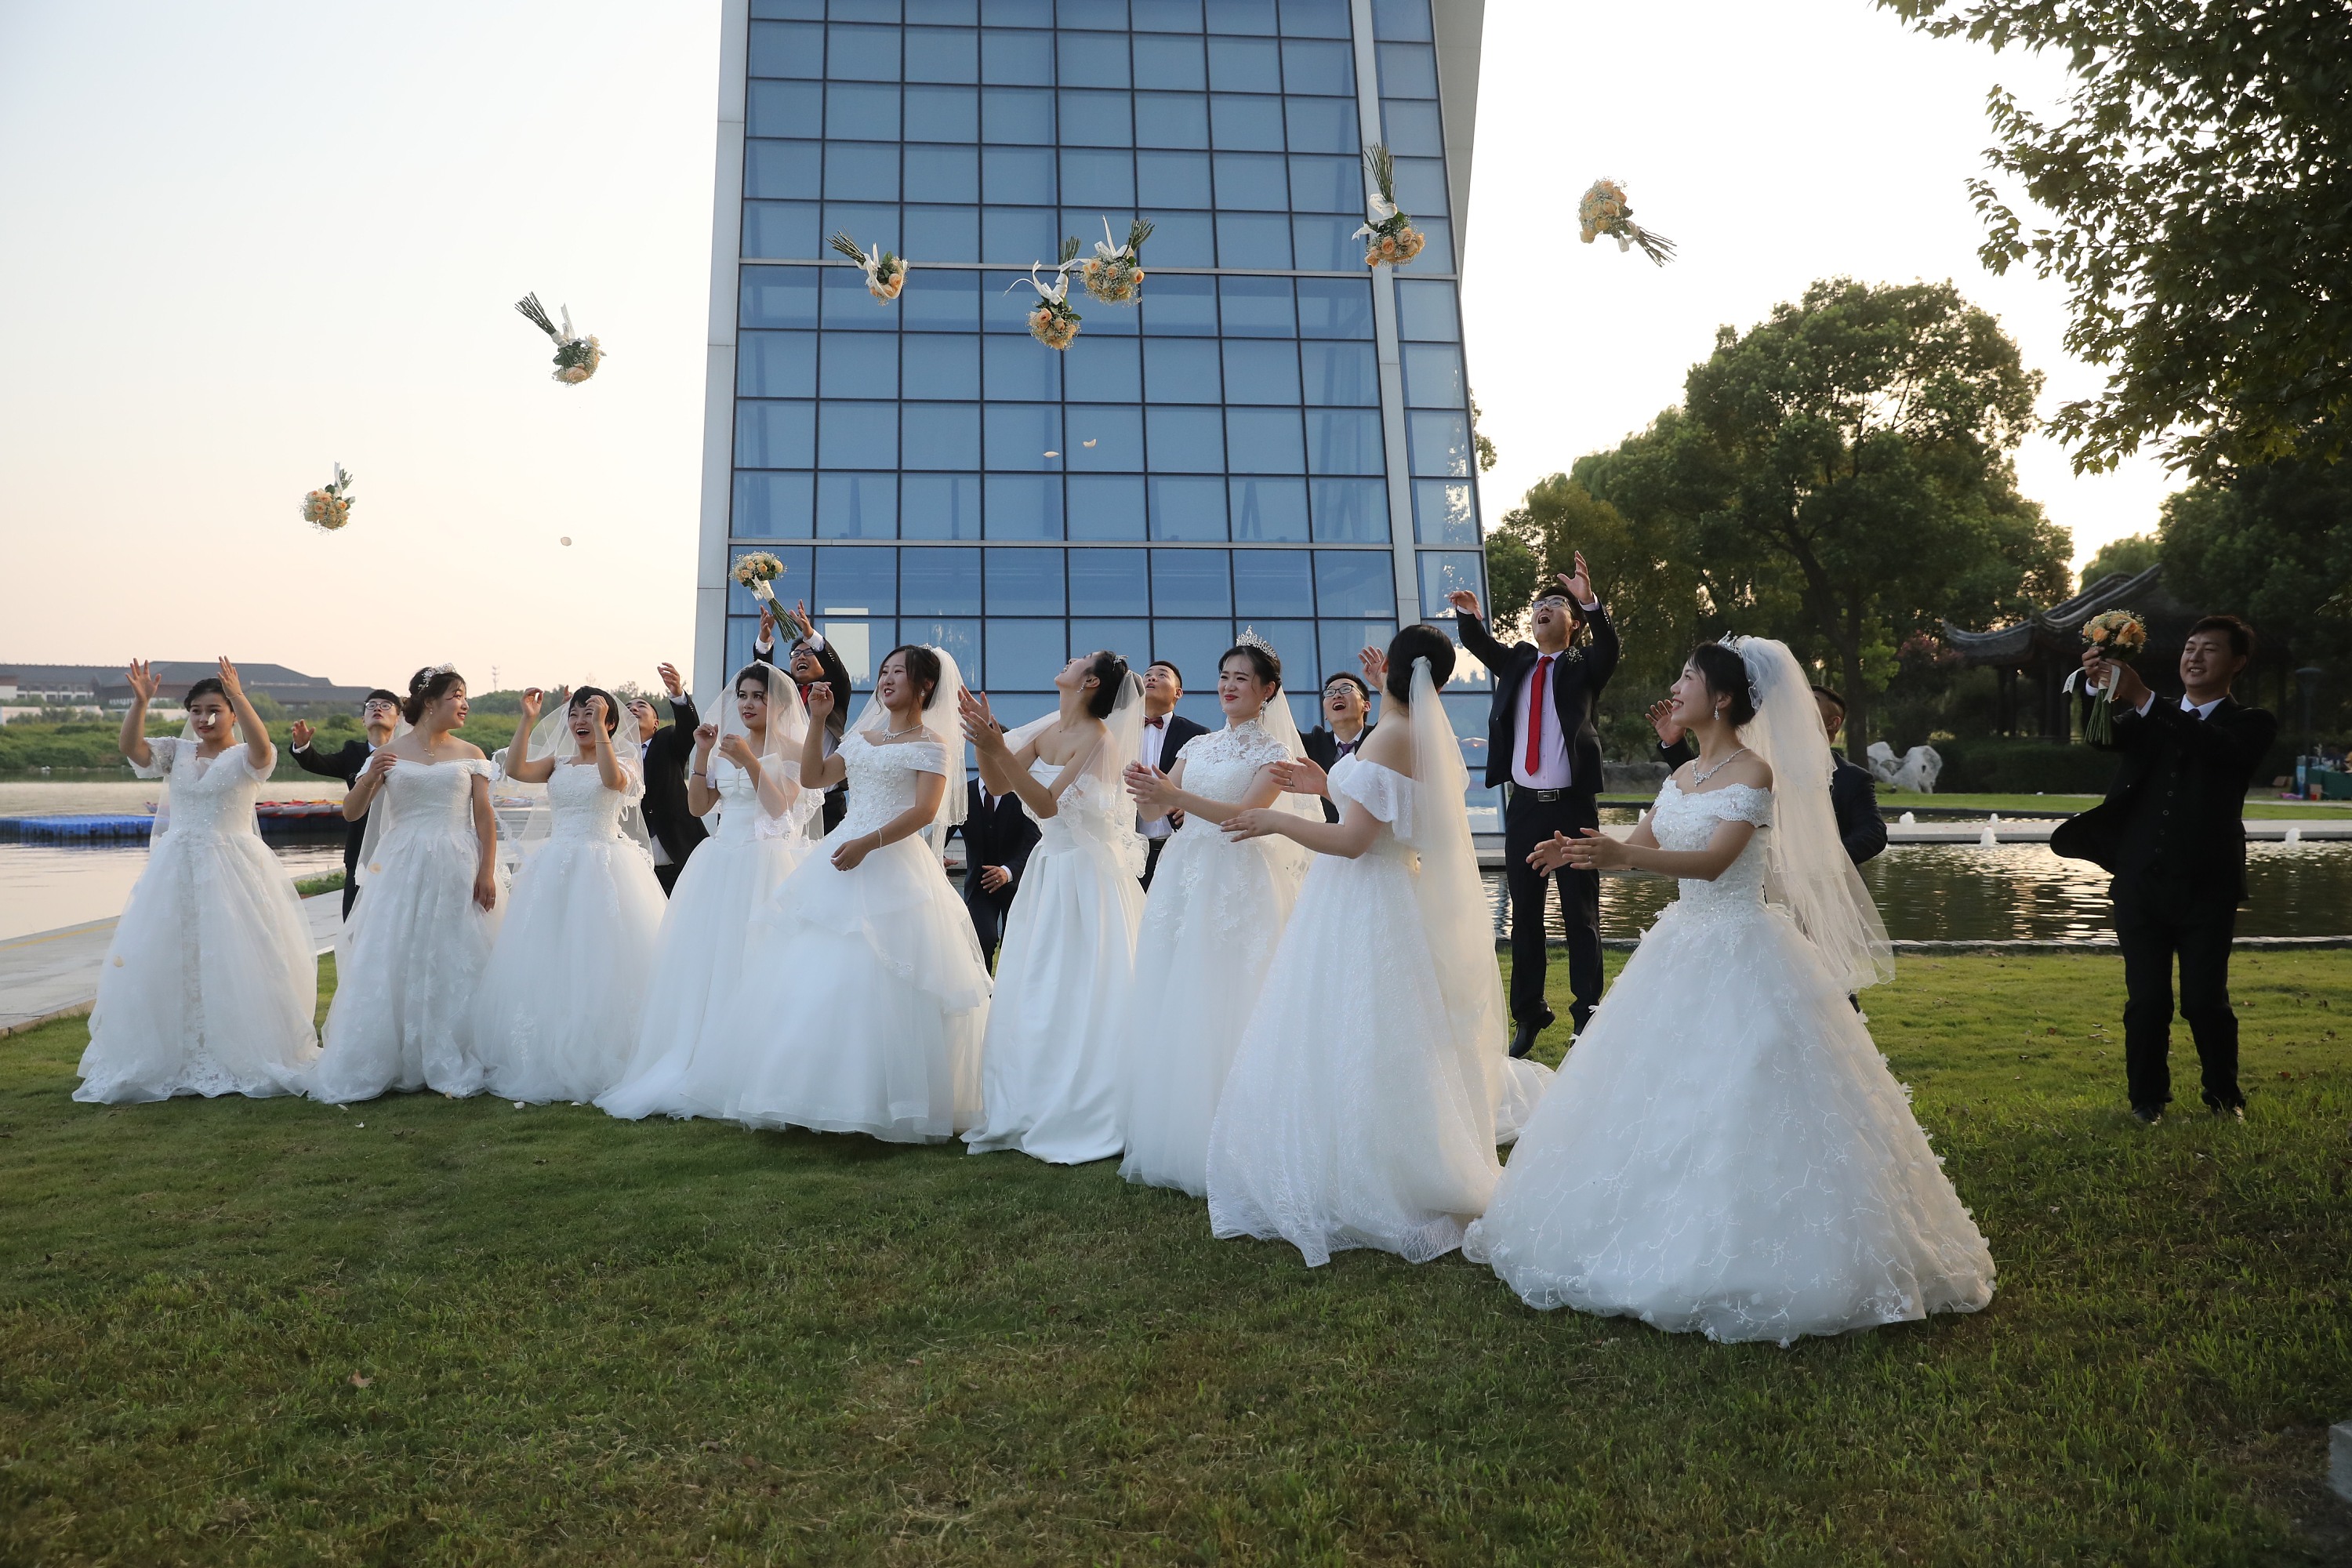 50对情侣着古装集体举办汉式婚礼 演绎中华传统礼仪之美|集体婚礼|婚礼|方特_新浪新闻